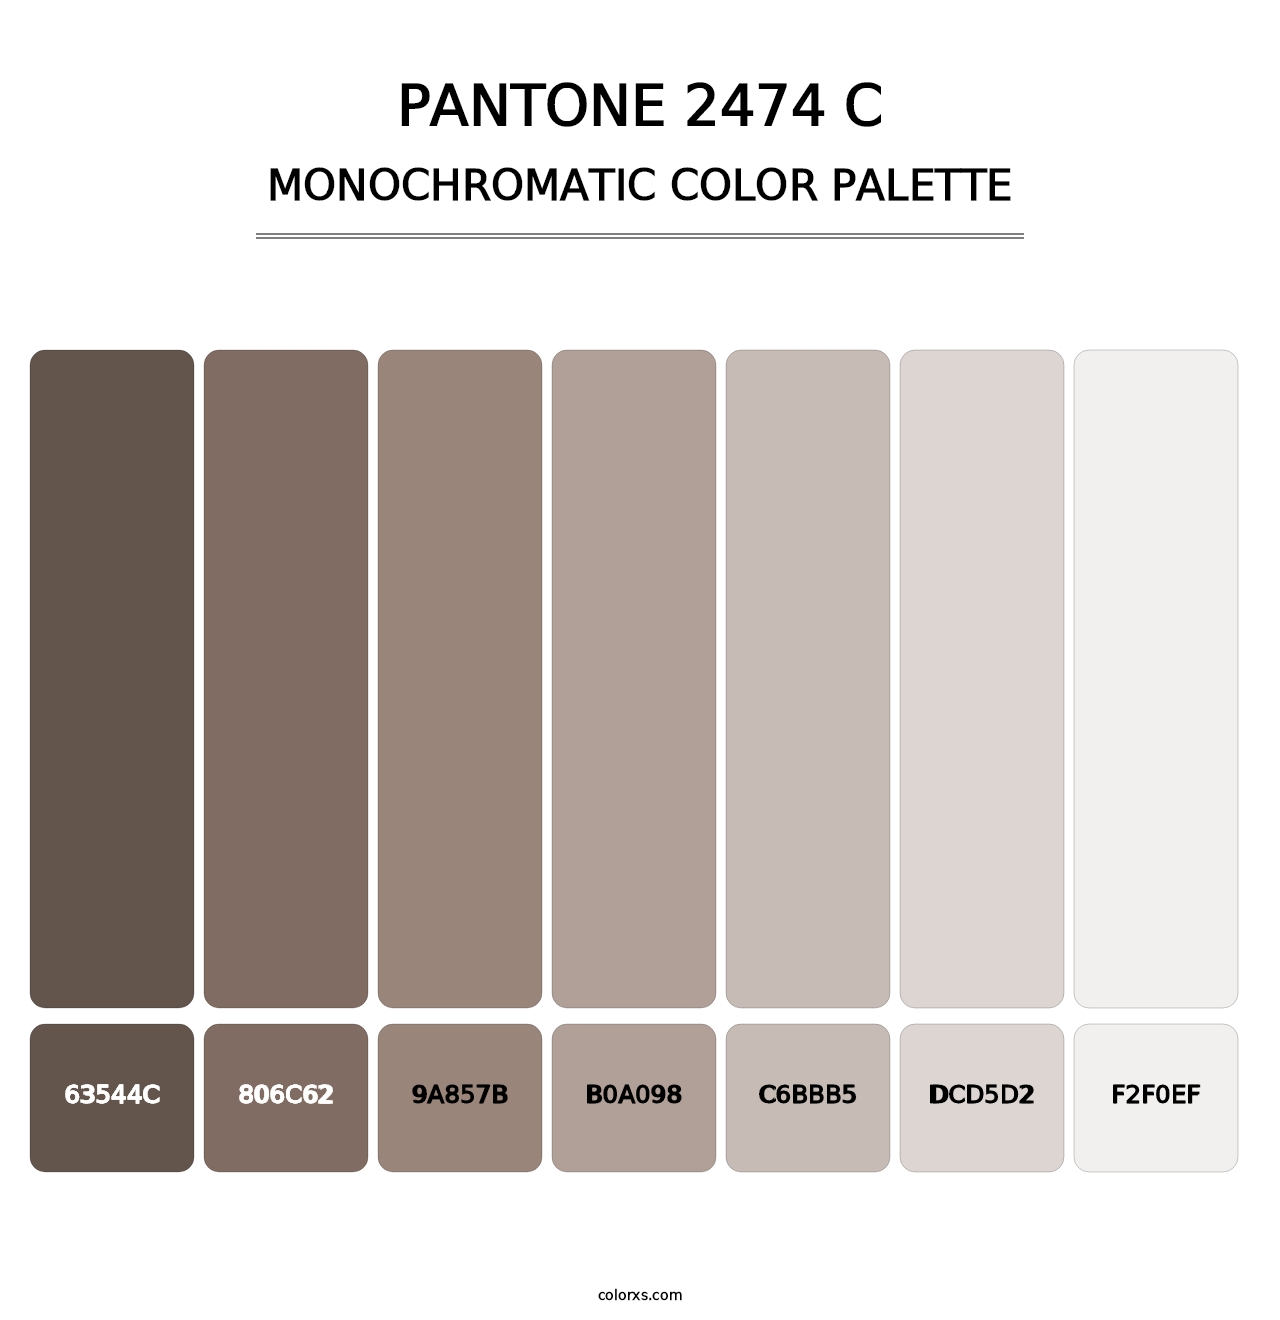 PANTONE 2474 C - Monochromatic Color Palette